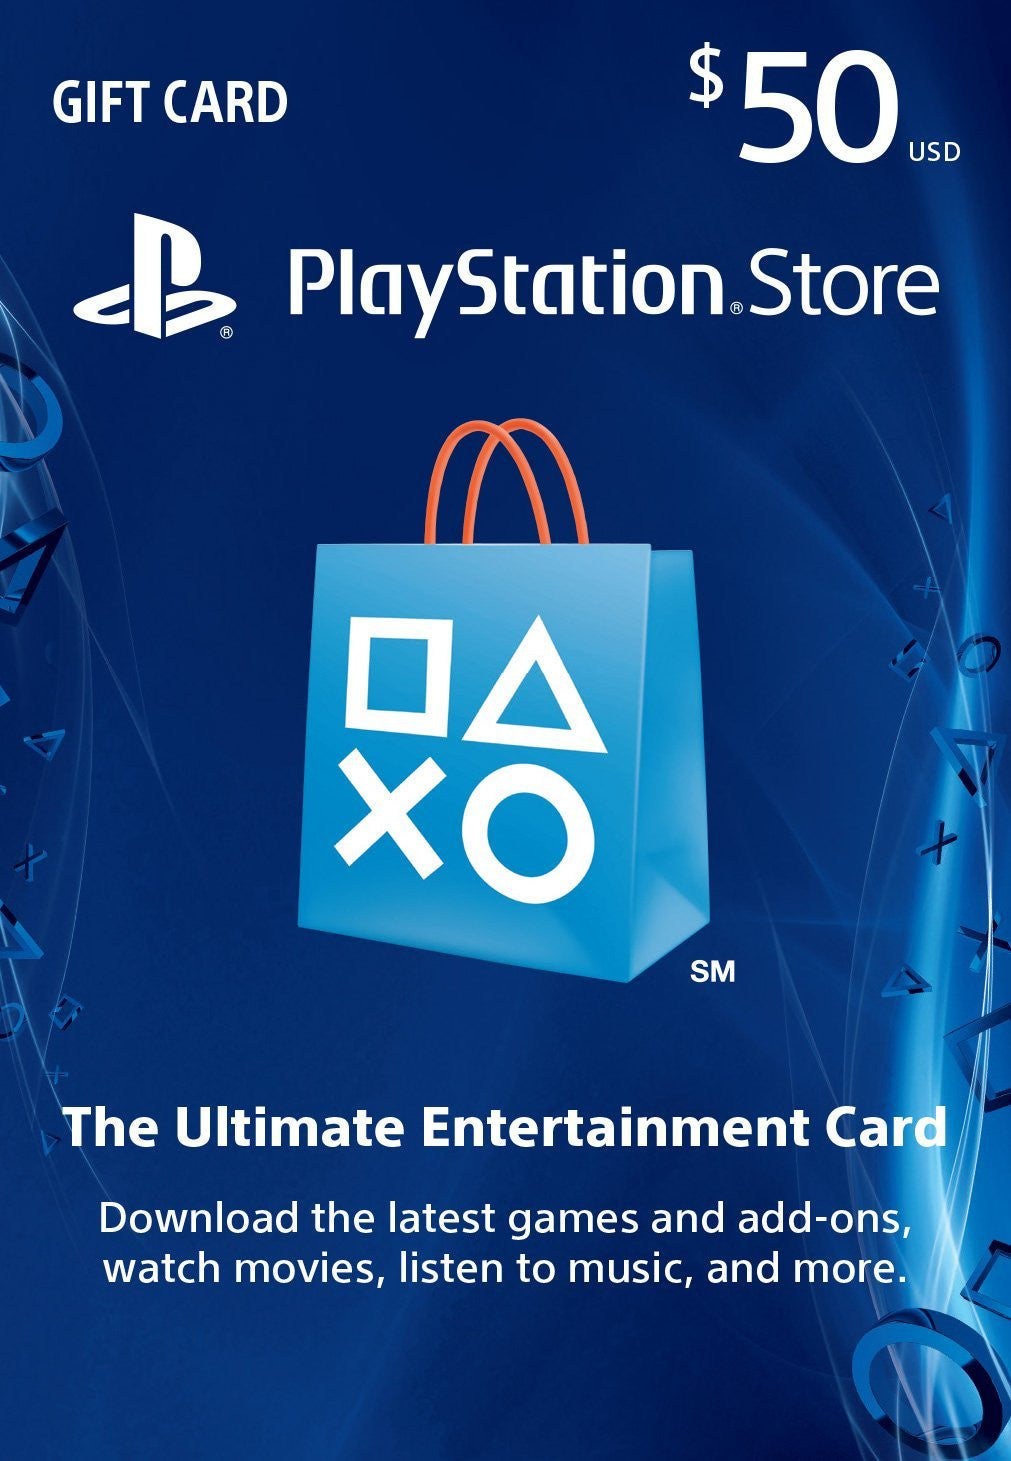 Nier Automata ps4 psn - Donattelo Games - Gift Card PSN, Jogo de PS3, PS4 e  PS5